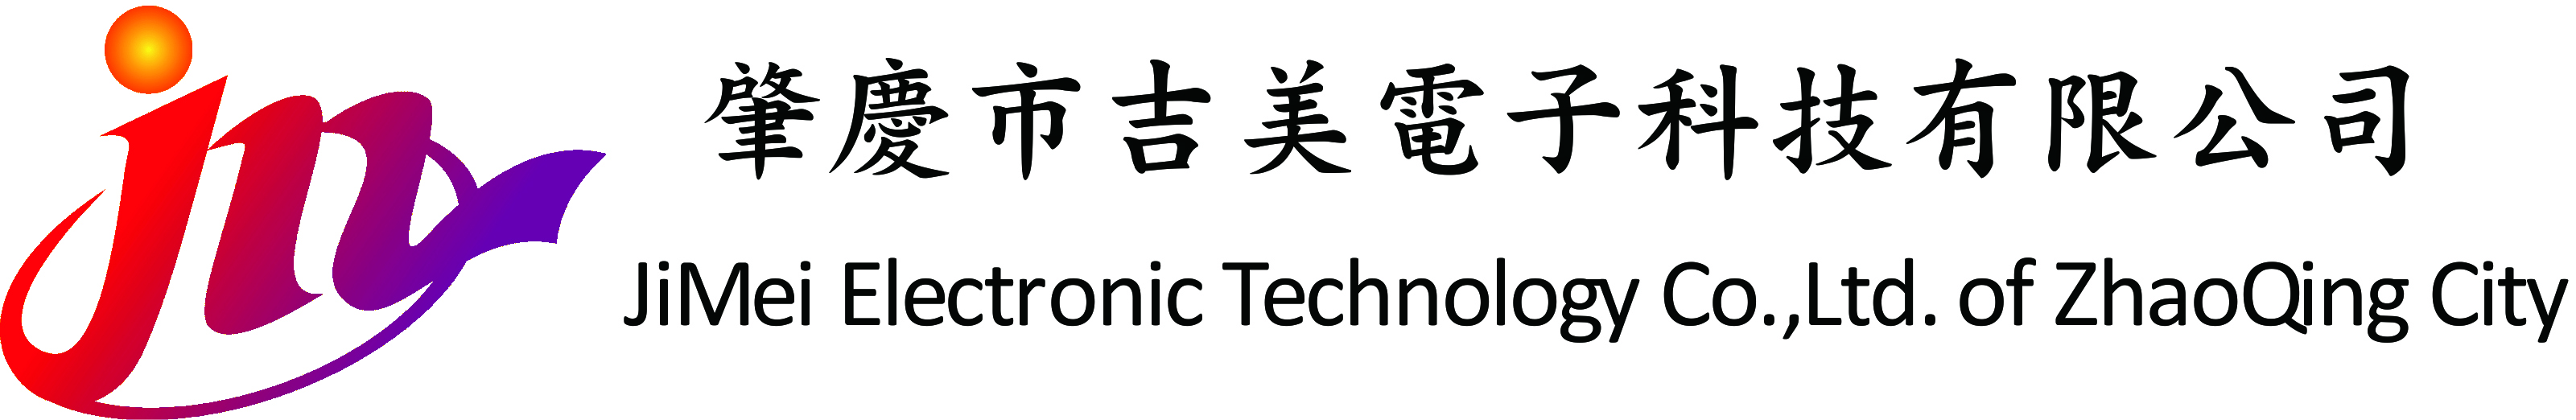 肇庆市吉美电子科技有限公司